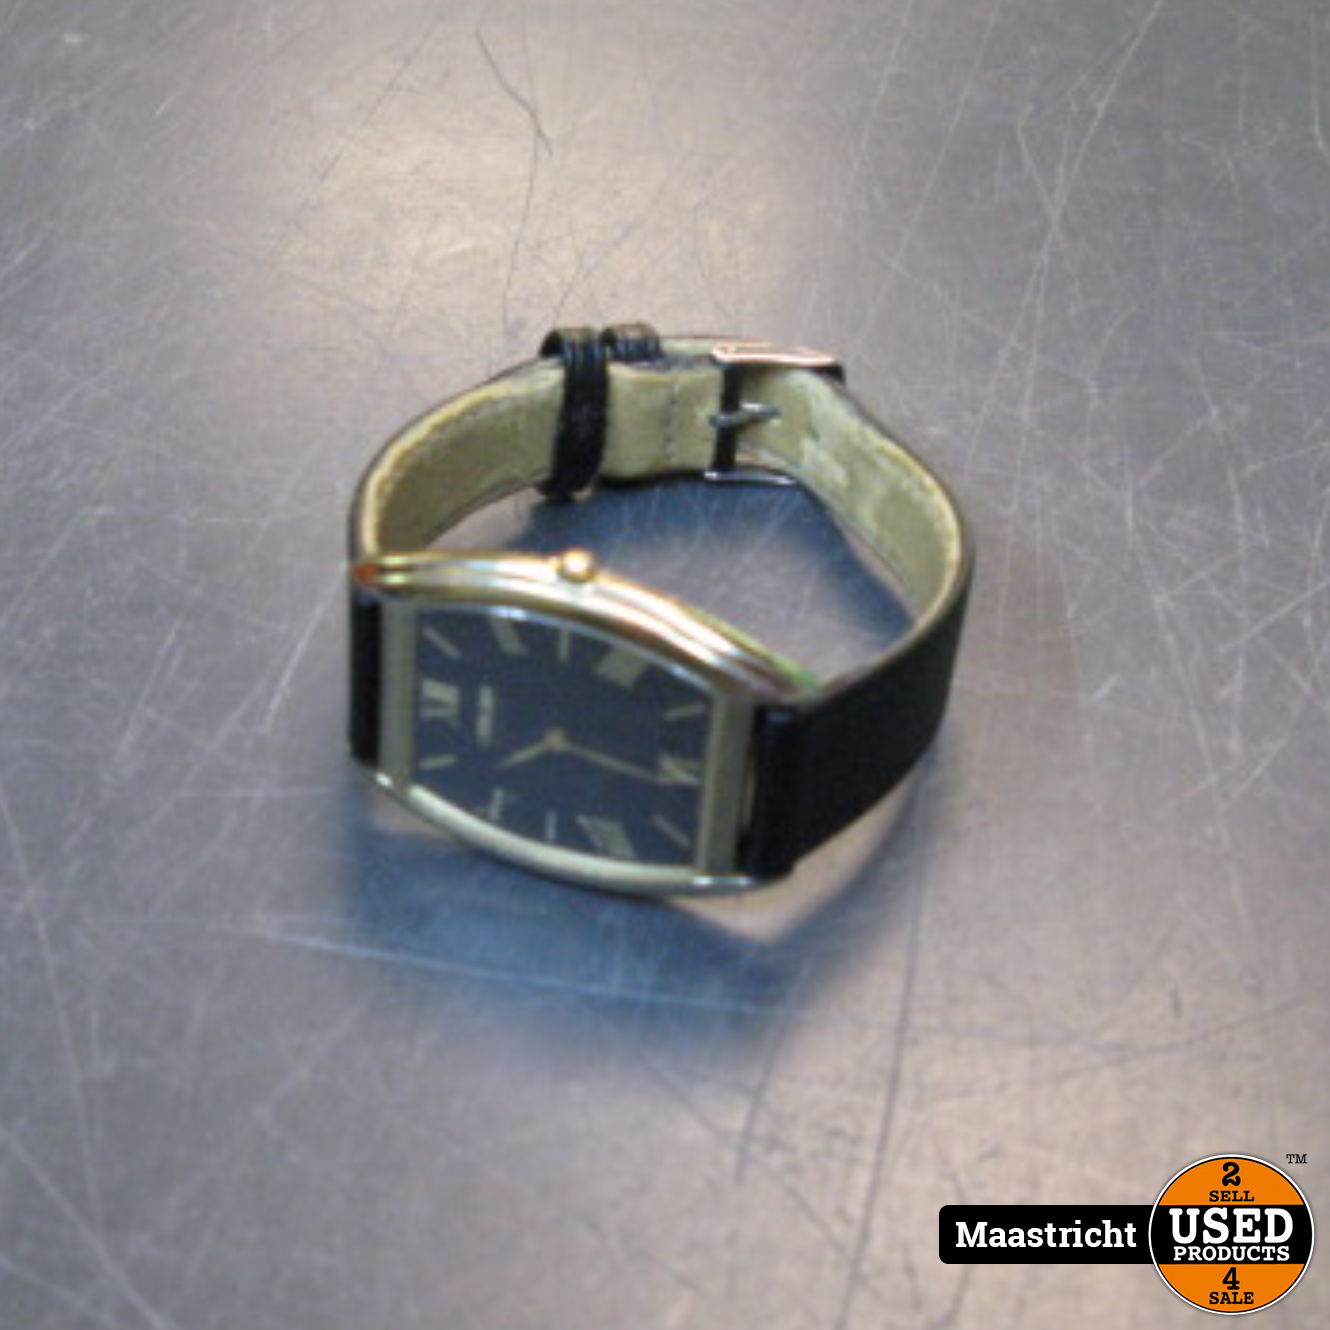 Kalmte Melodieus niet citizen Citizen eco drive horloge - elders gezien voor 120,- euro - Used  Products Maastricht